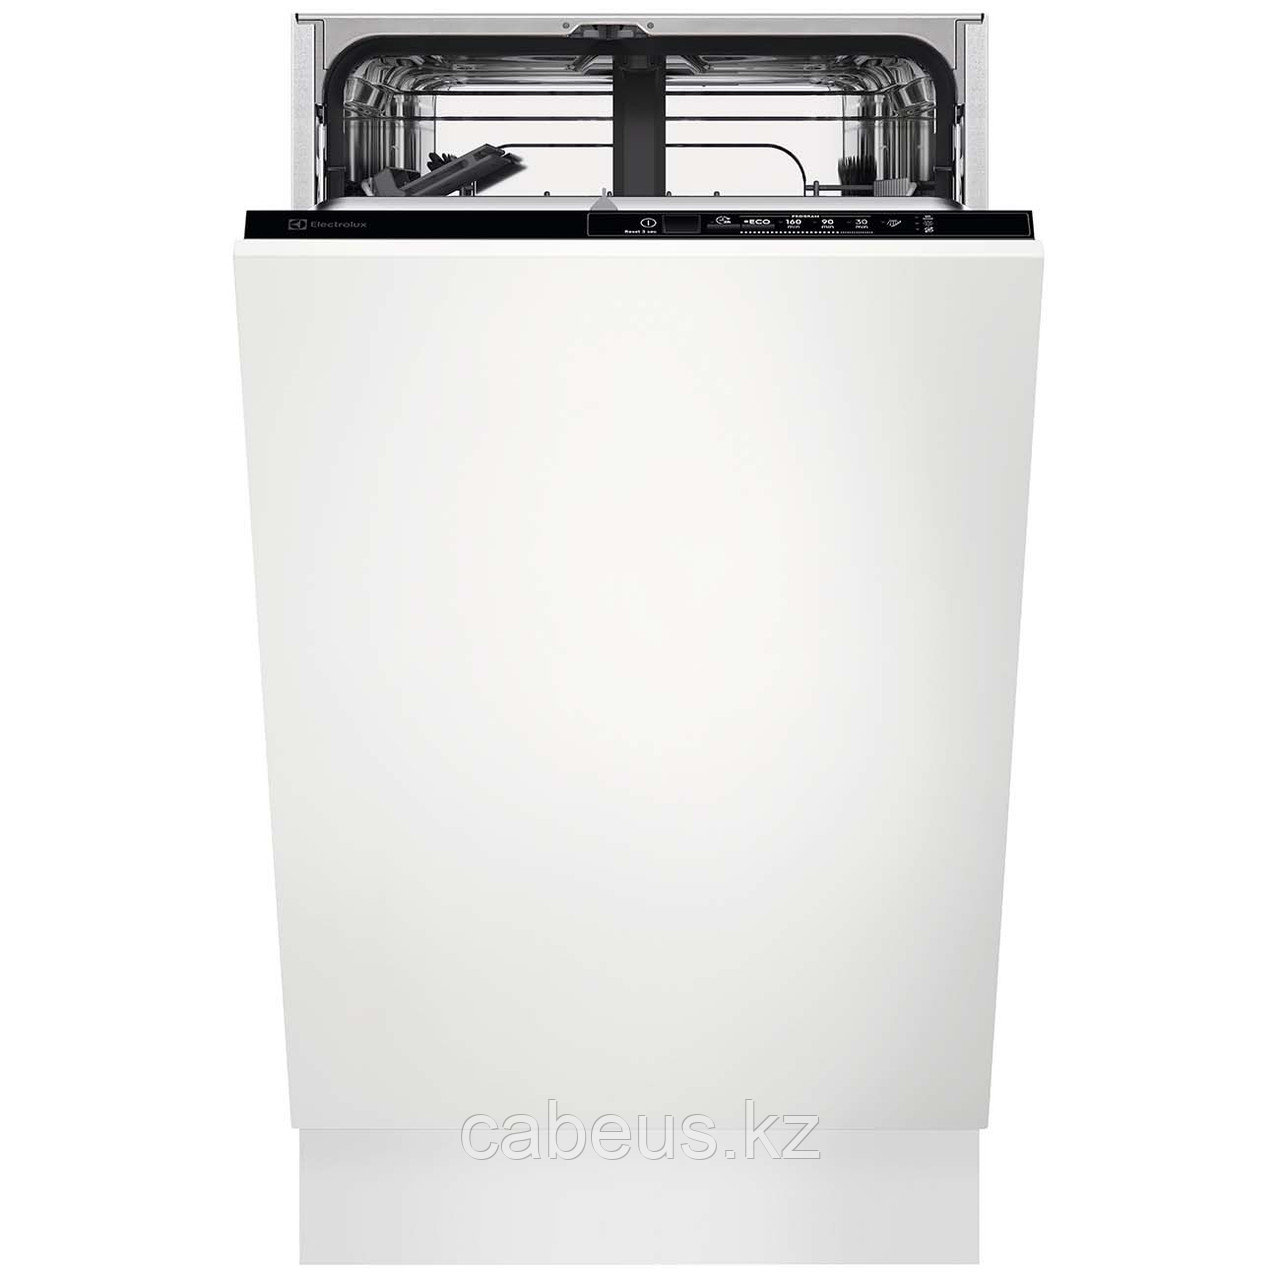 Встраиваемая посудомоечная машина 45 см Electrolux EEA12101L